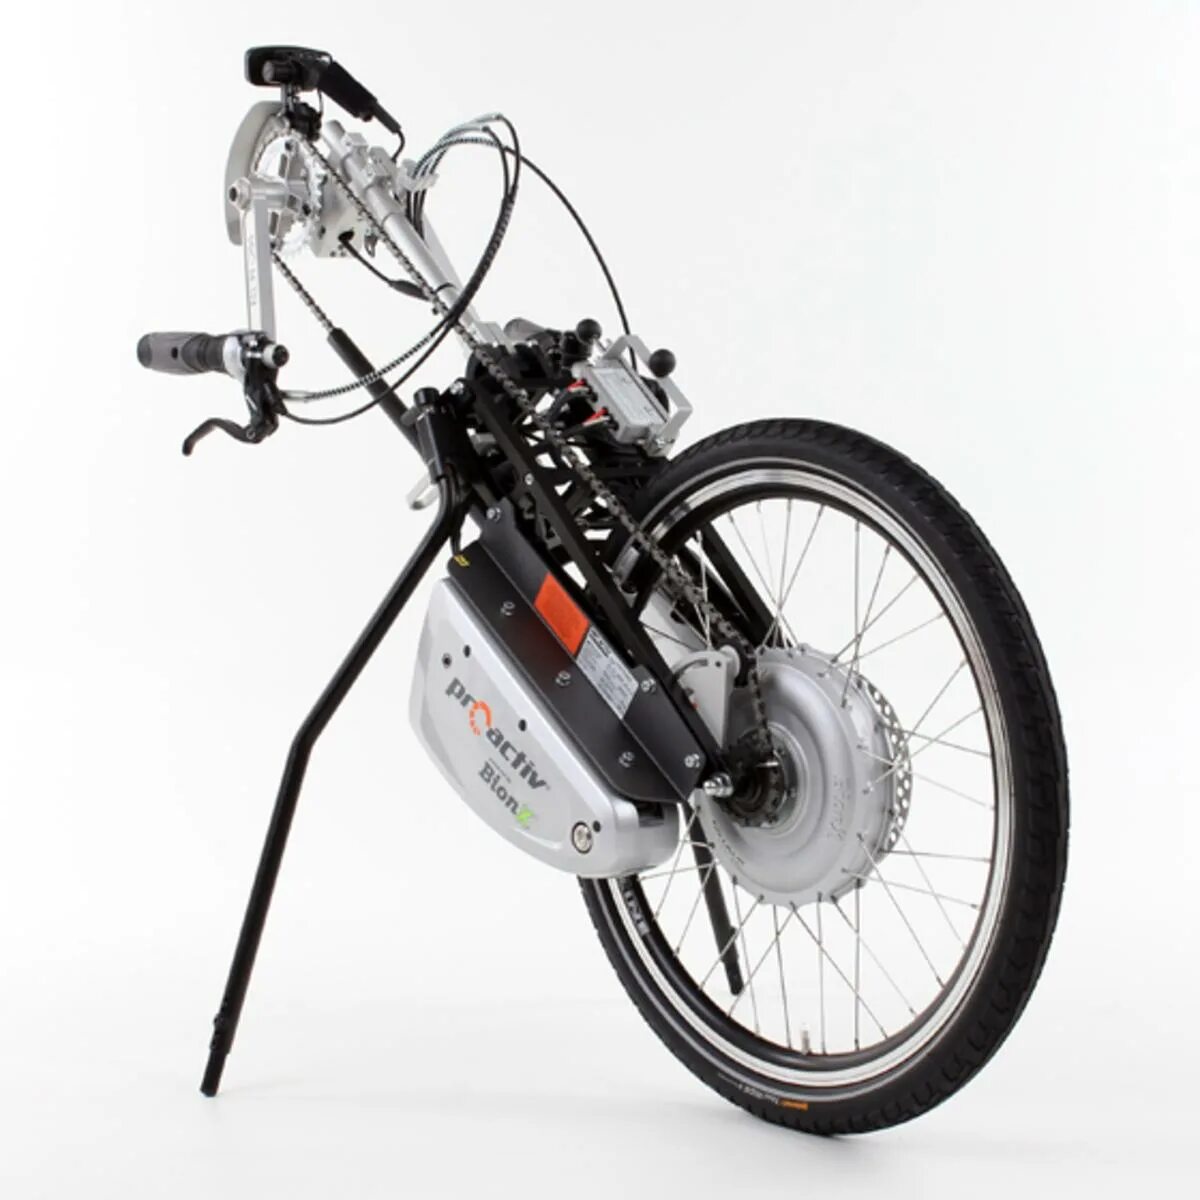 Купить мотор для велосипеда с аккумулятором. Электроколесо для скутера 2000w. Электроколесо для инвалидной коляски. Электроколесо для велосипеда 29. Переднее колесо электроколесо на велосипед.